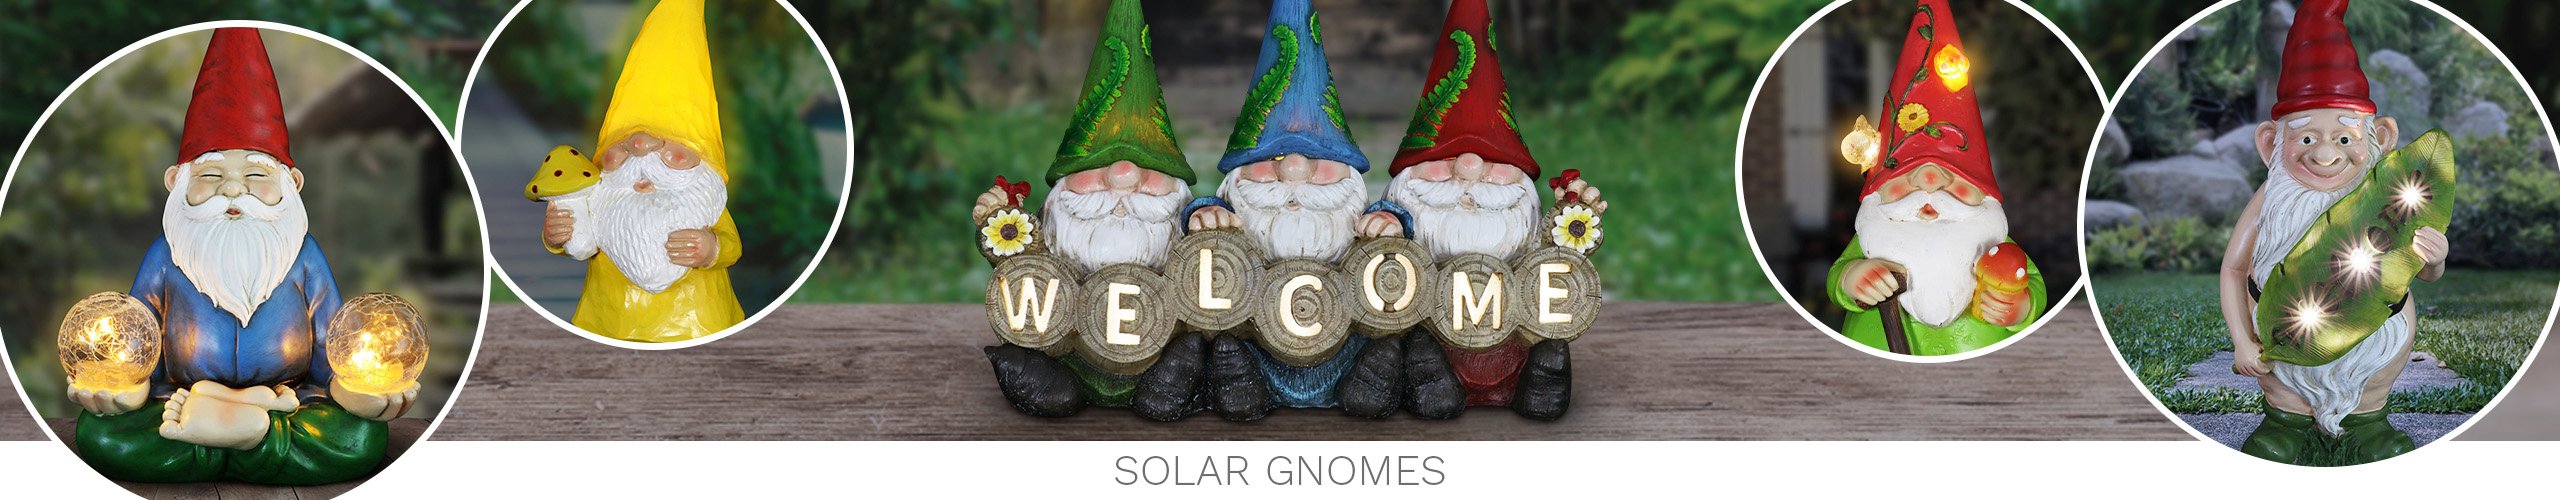 Solar Gnome Statues